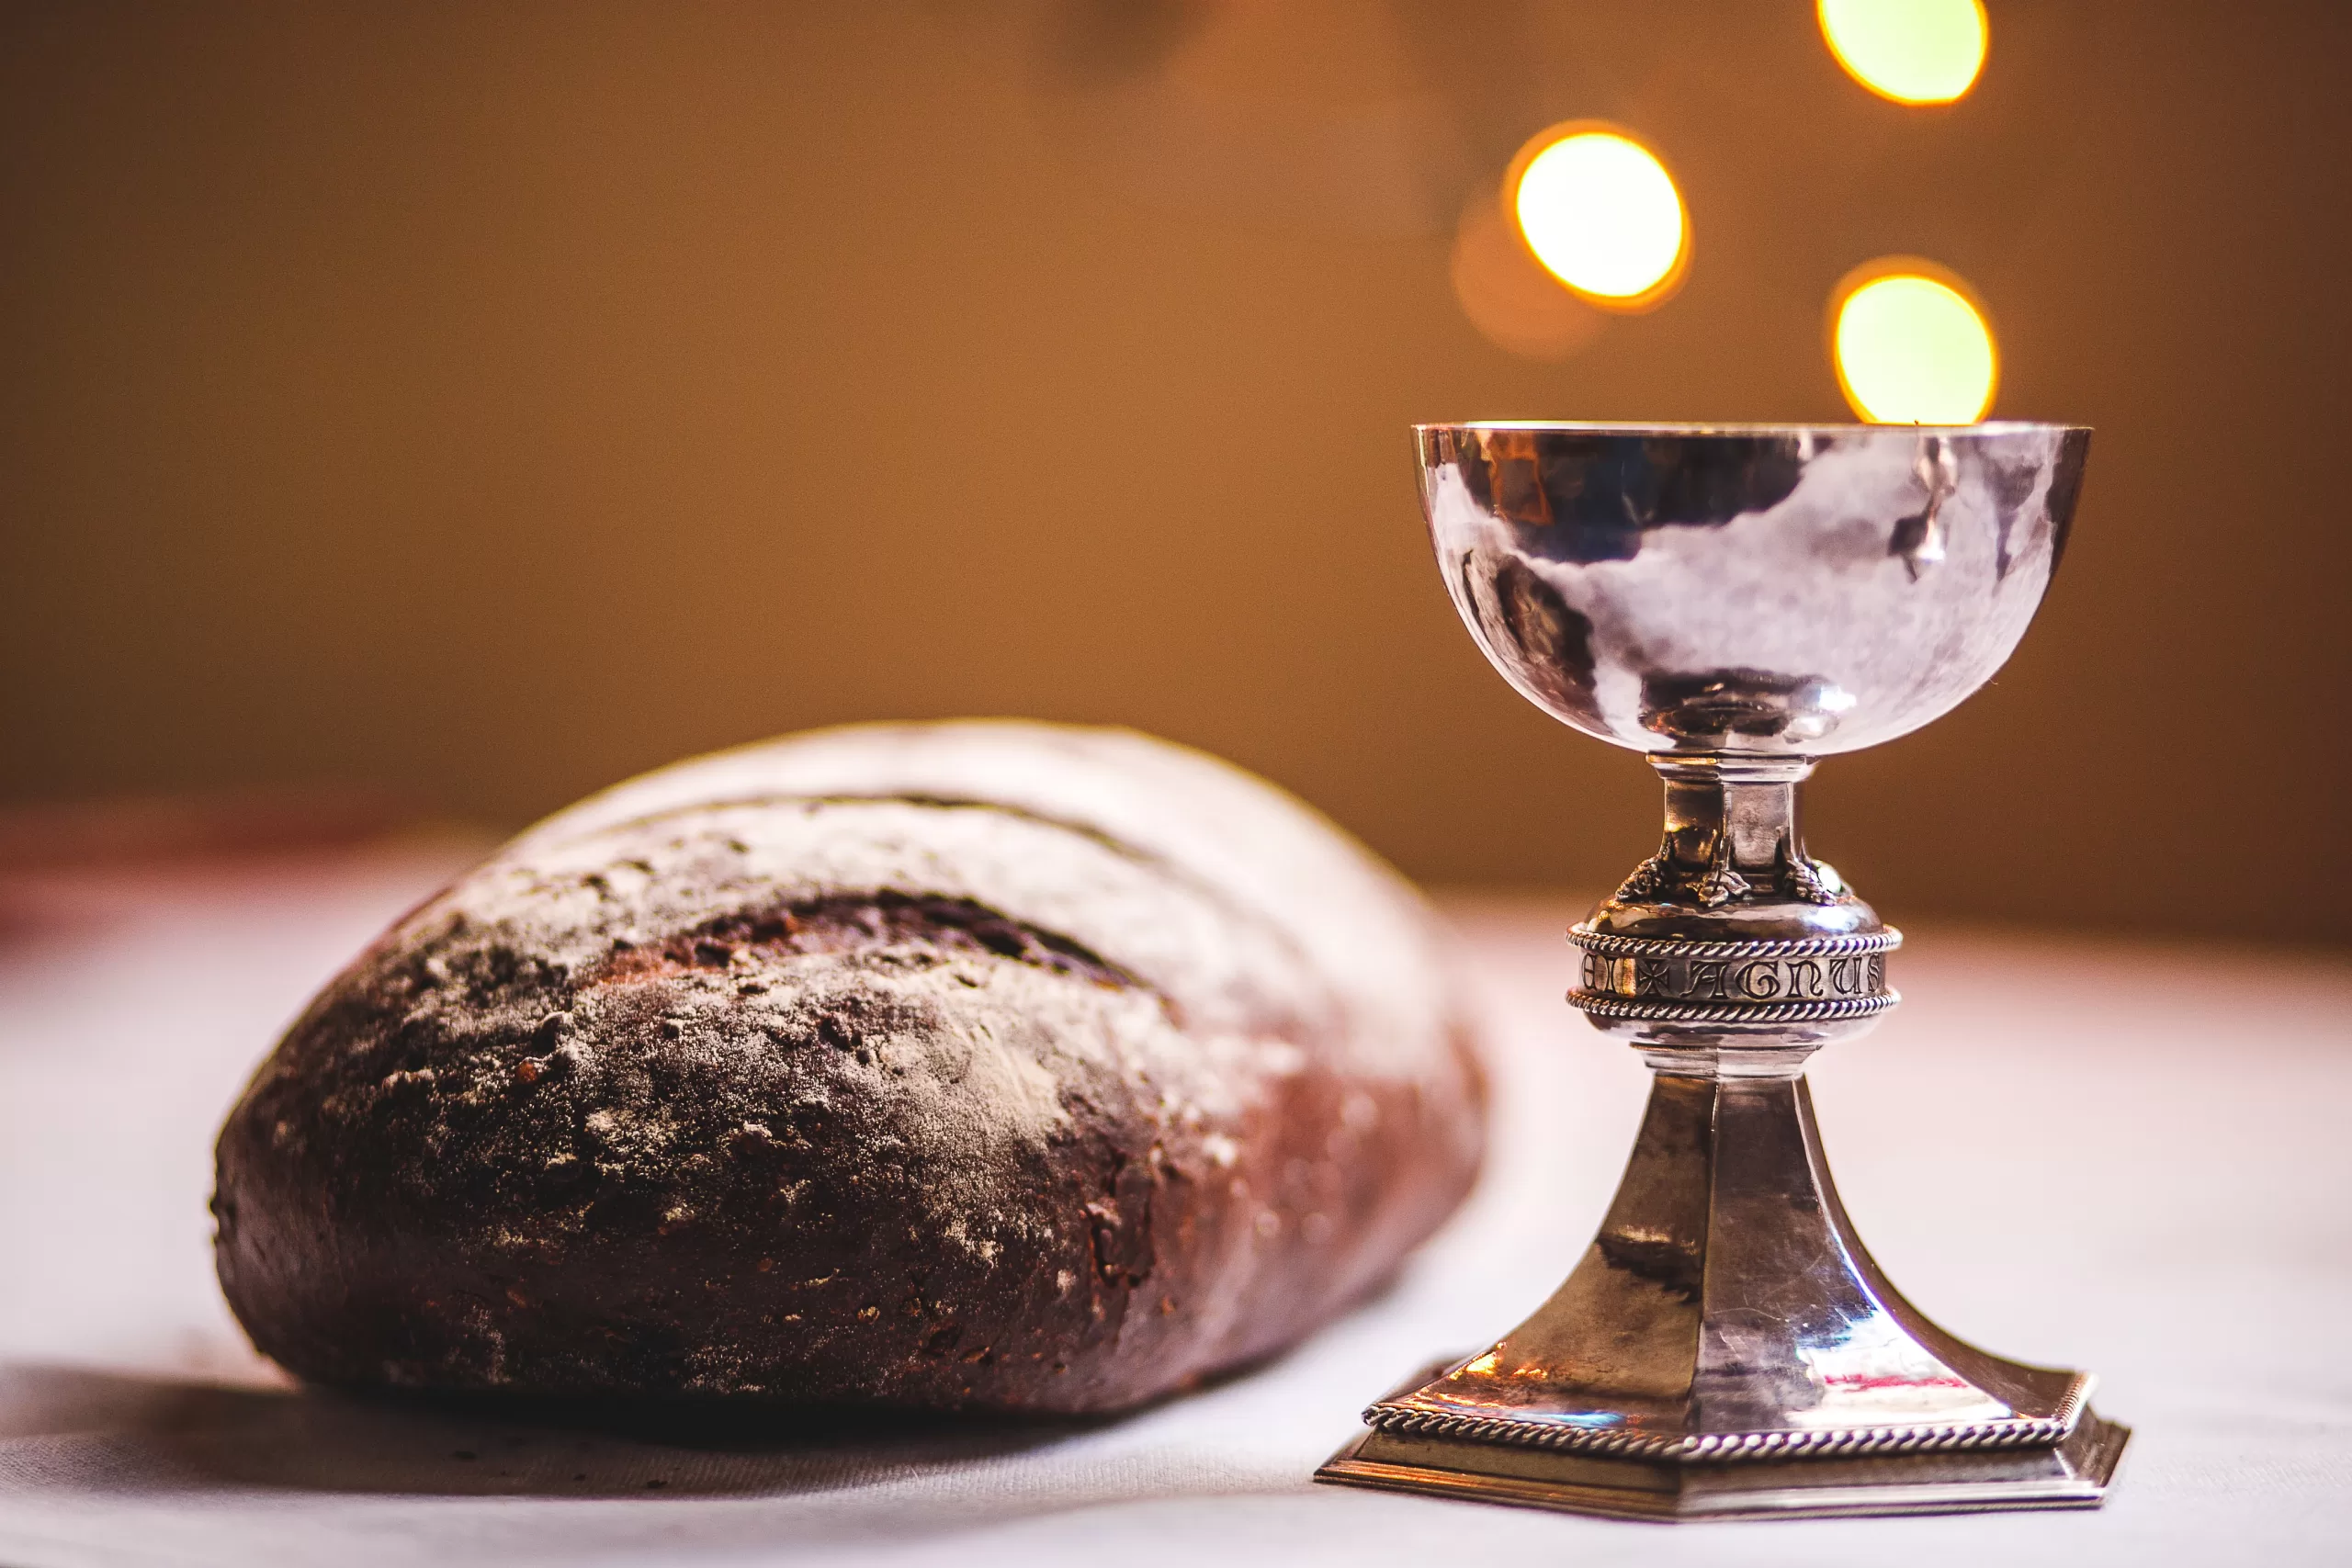 Should we do Holy Communion every Sunday?